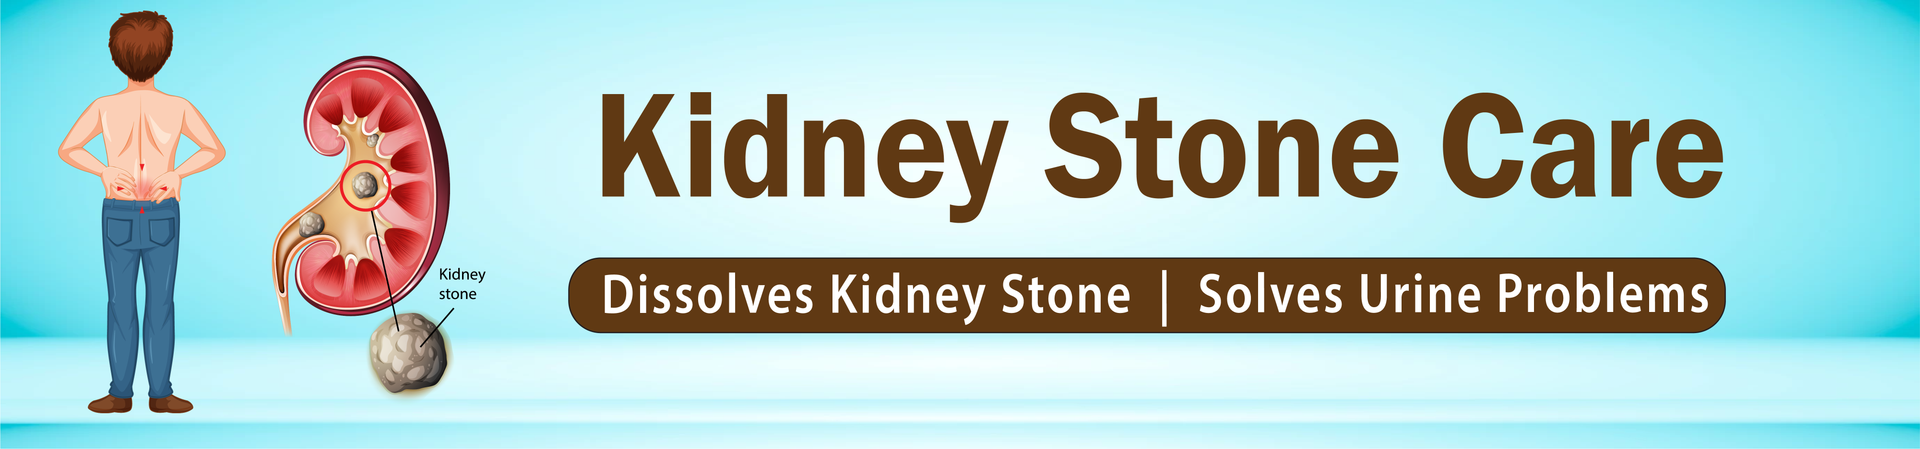 Kidney Stone Ayurvedic Medicine - Kidney Stone Treatment